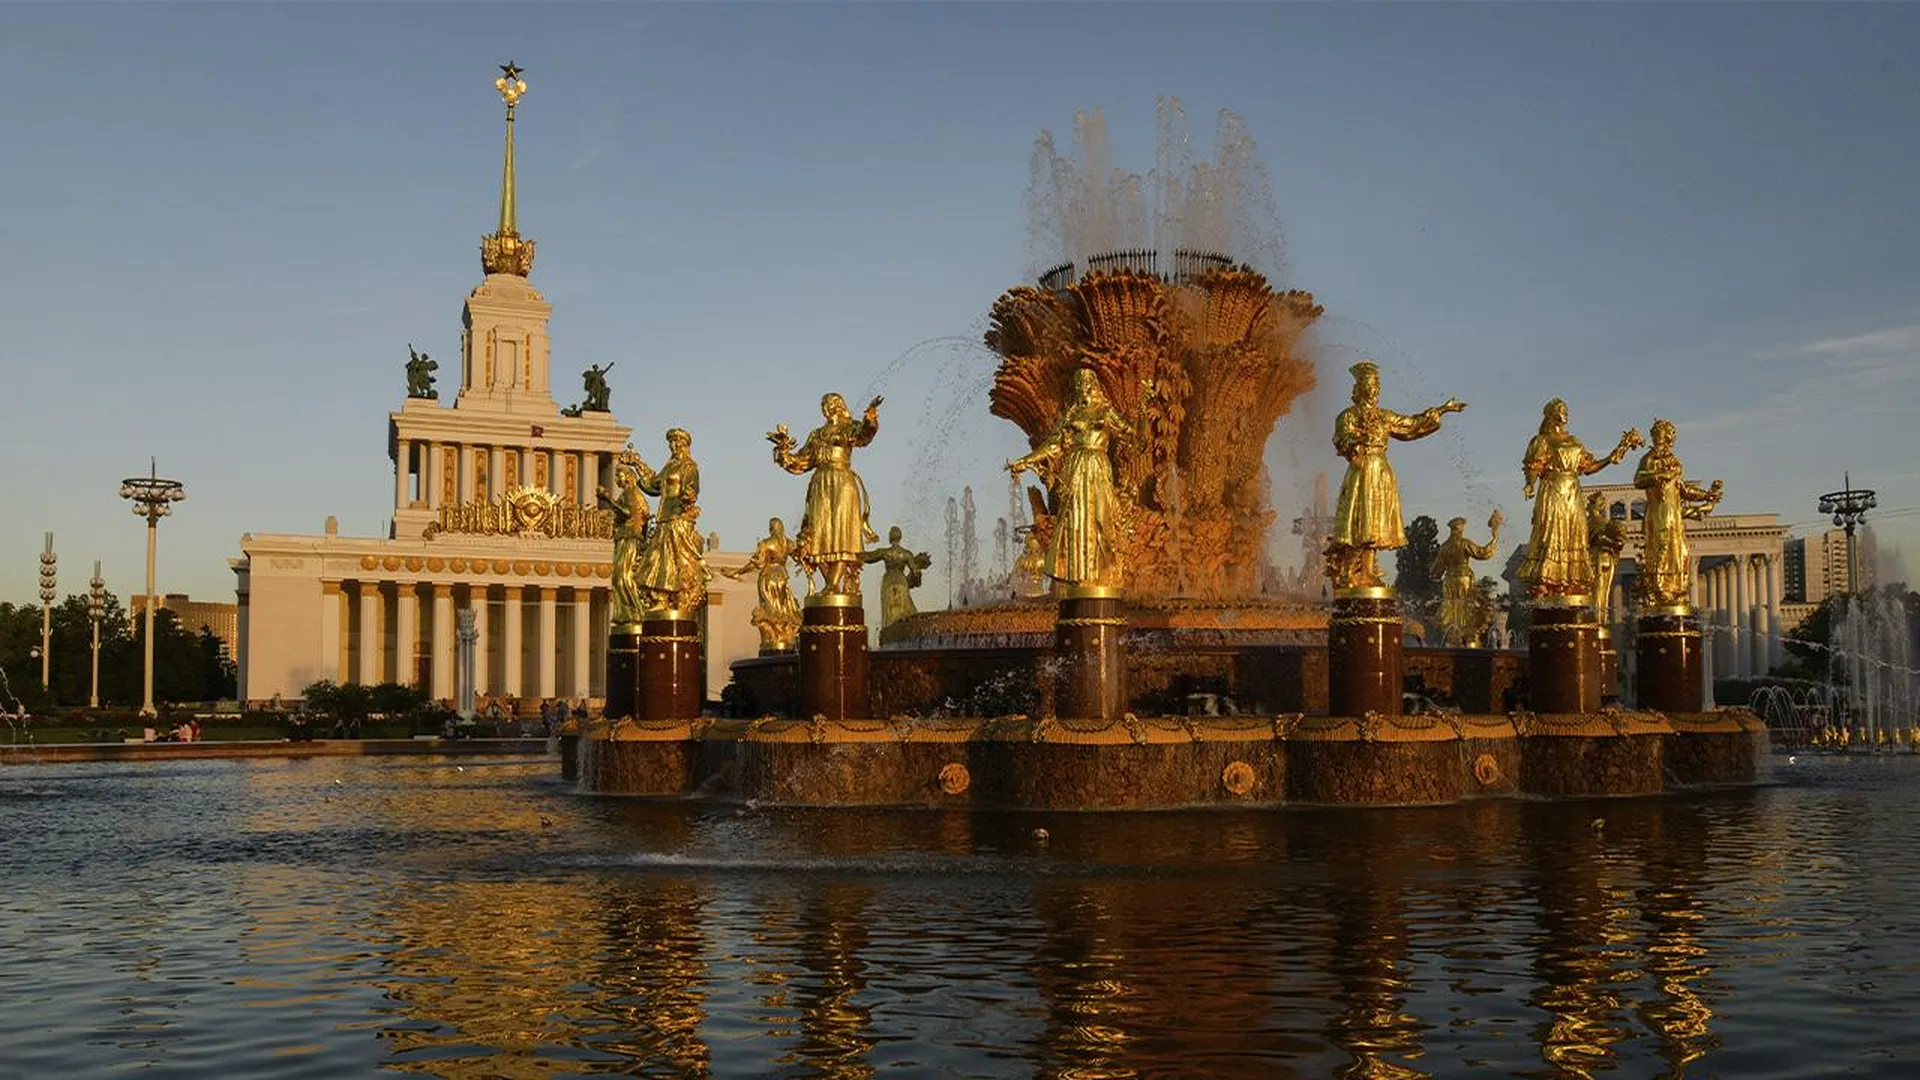 Гулять часами: найдены самые живописные и интересные парки Москвы и Подмосковья